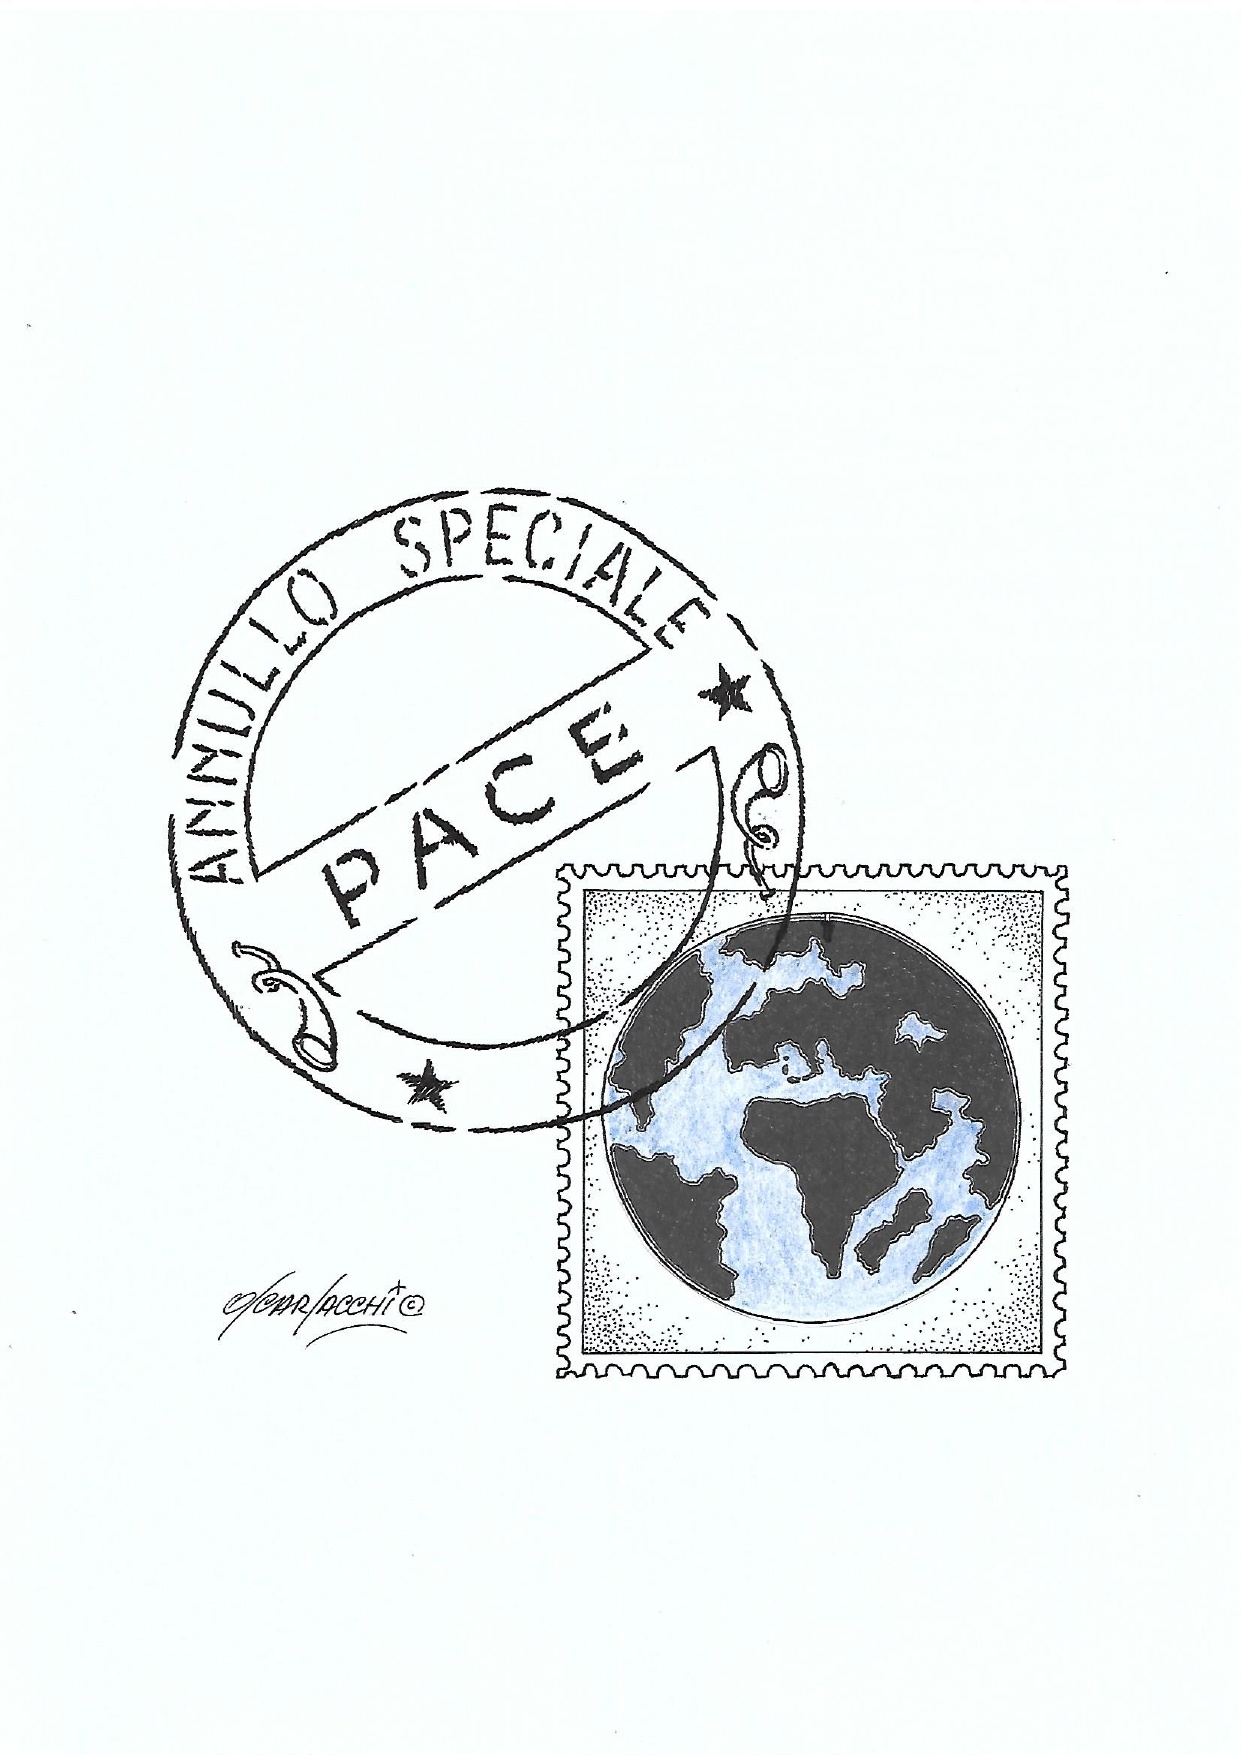 Pace. In esclusiva per Notizie la vignetta di Oscar Sacchi